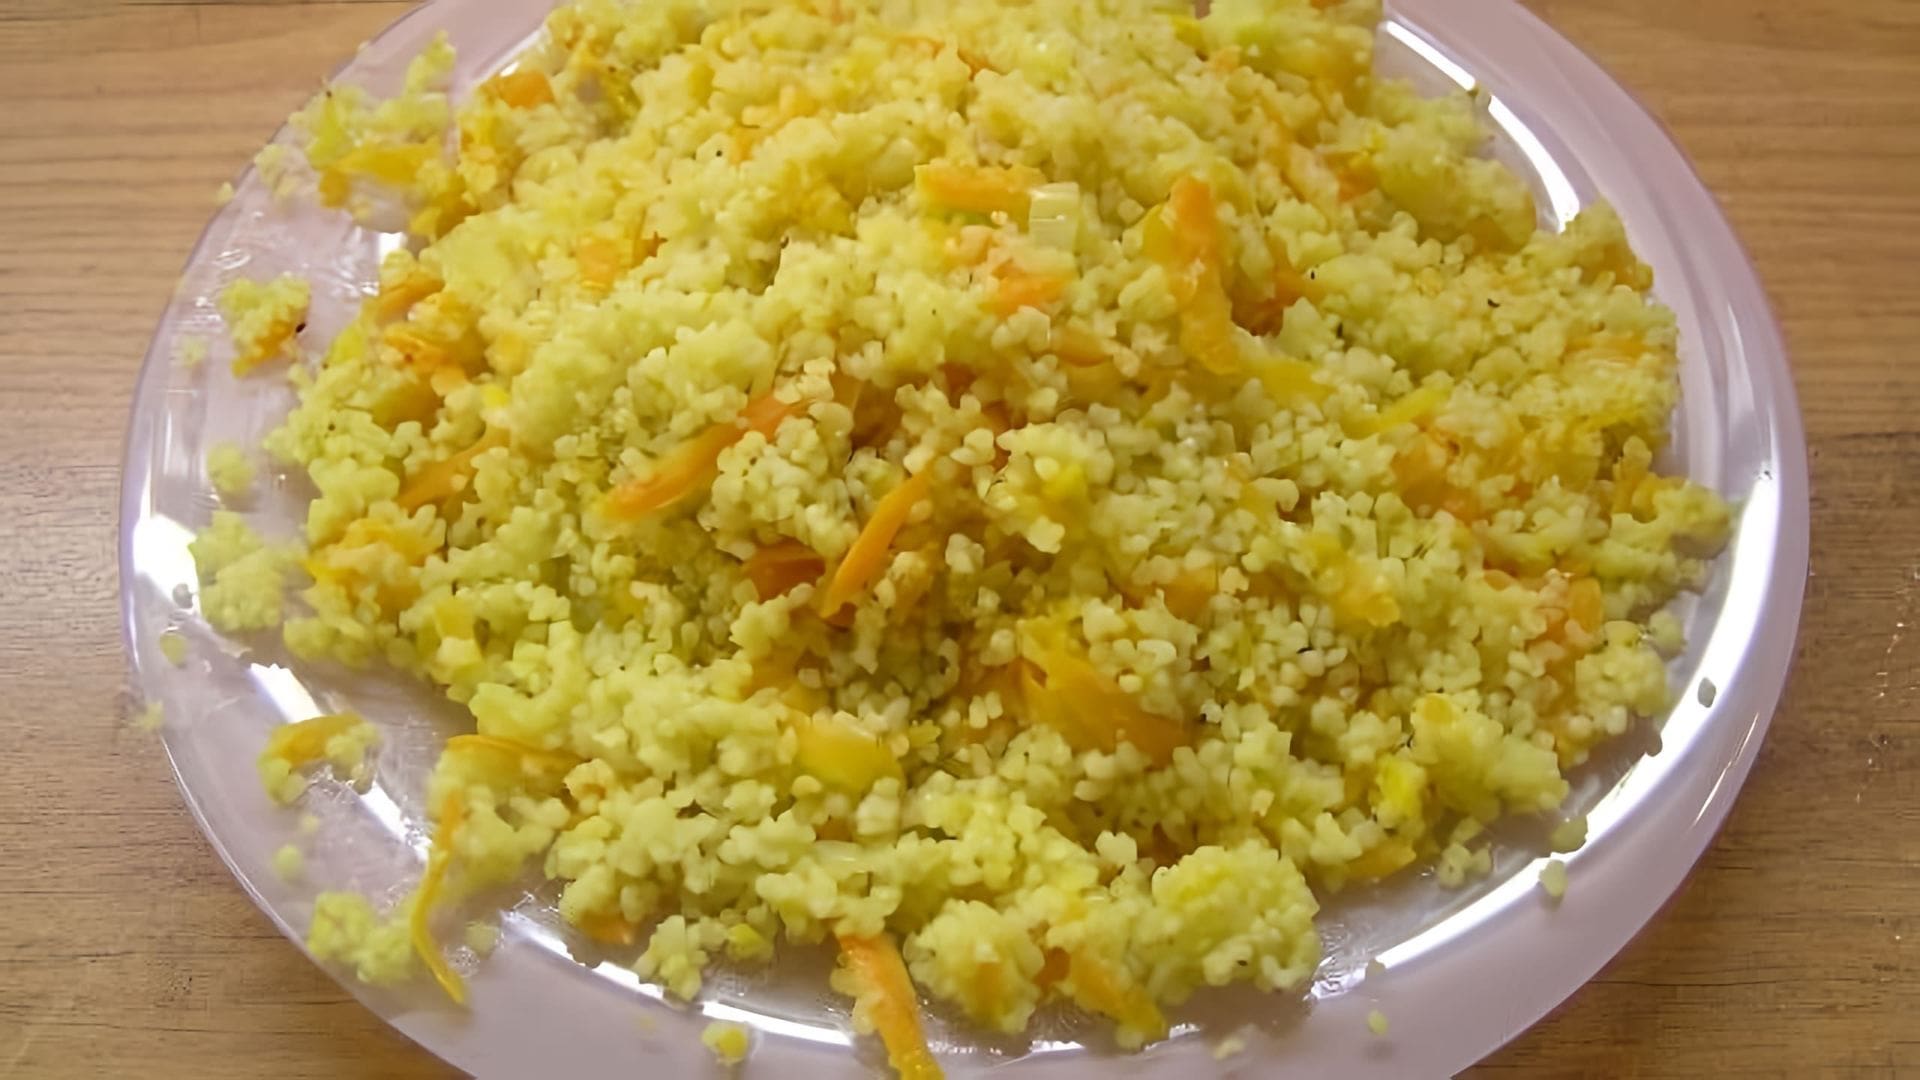 В данном видео демонстрируется рецепт приготовления кус-куса с овощами